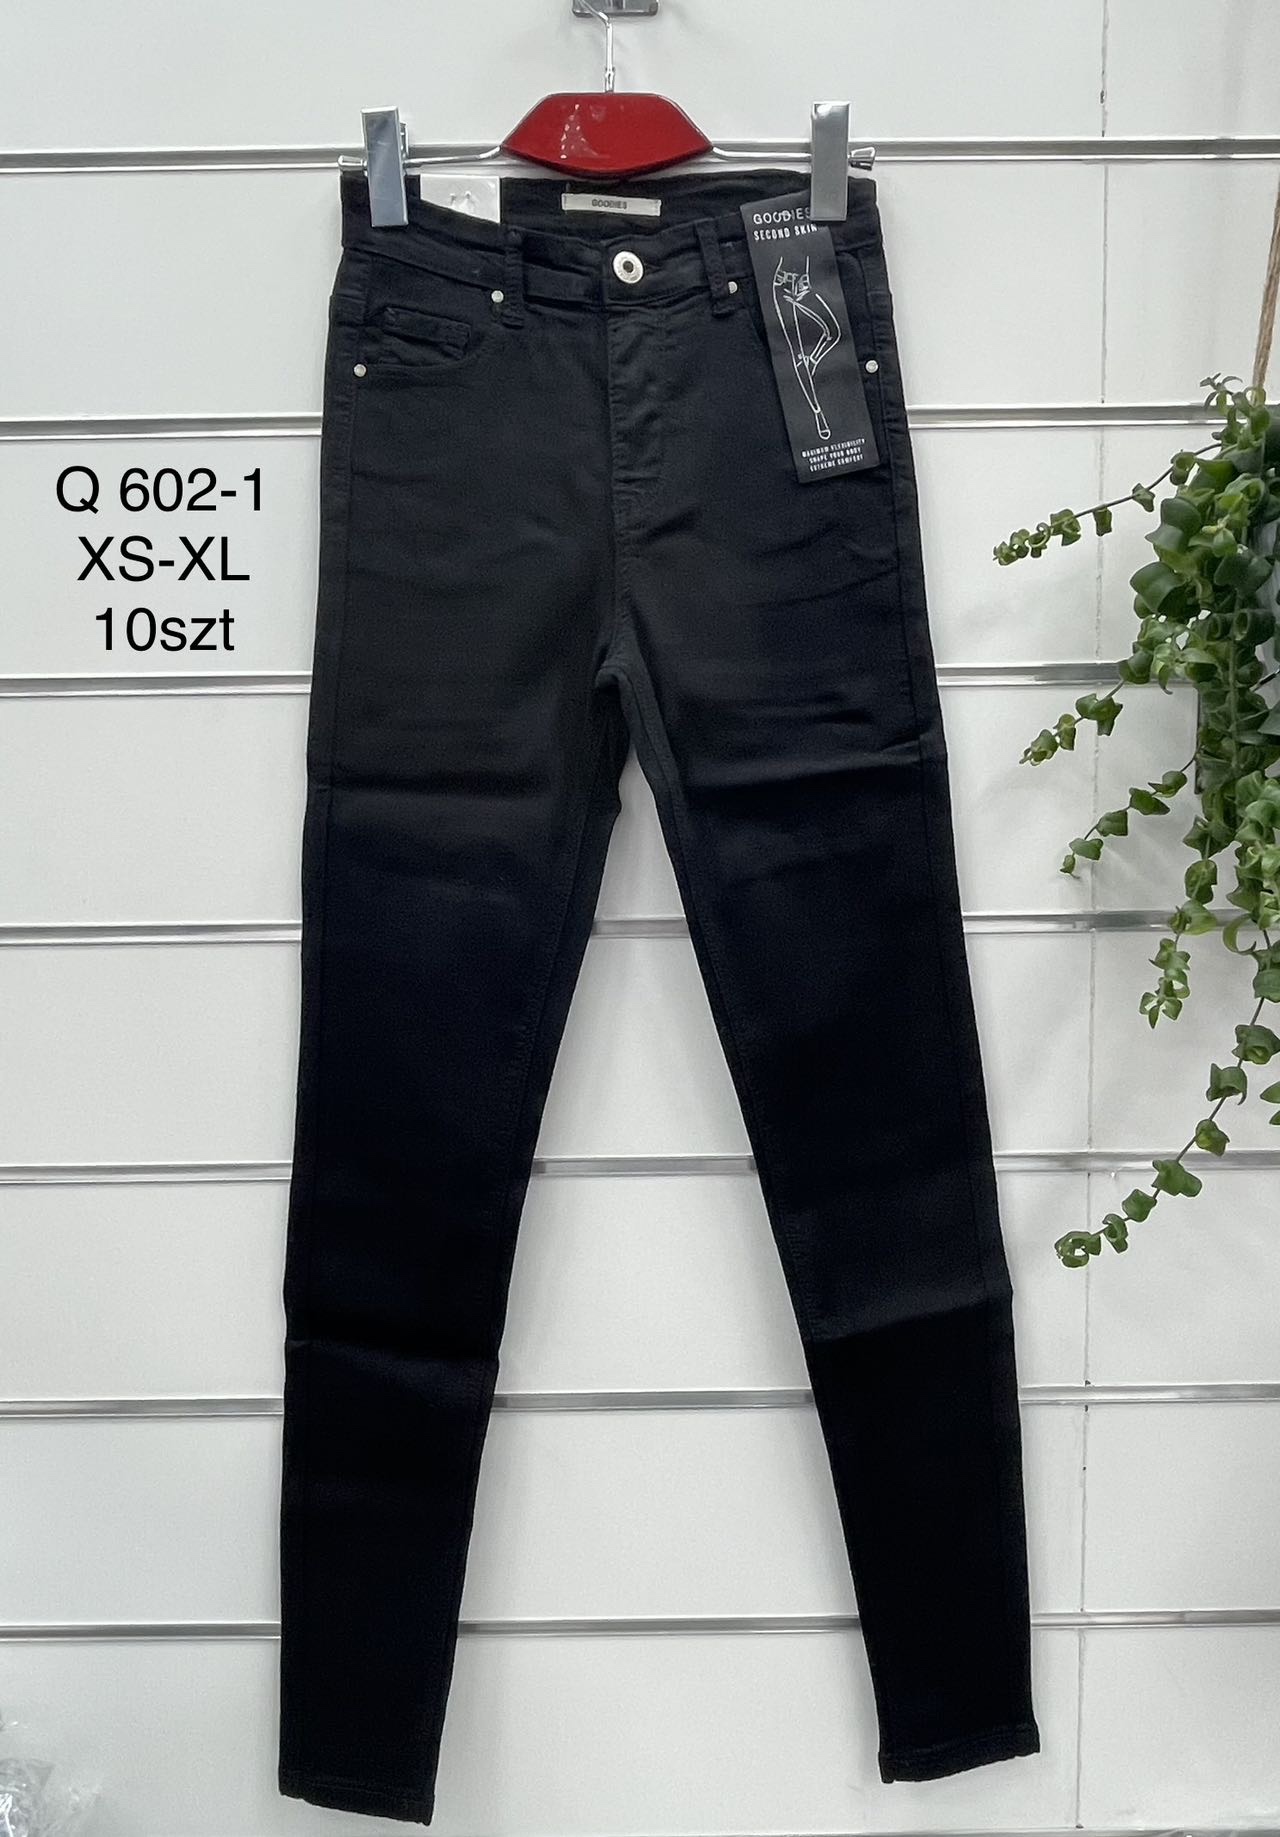 Spodnie damskie jeans Roz  XS-XL .  1 kolor . Paczka 10szt